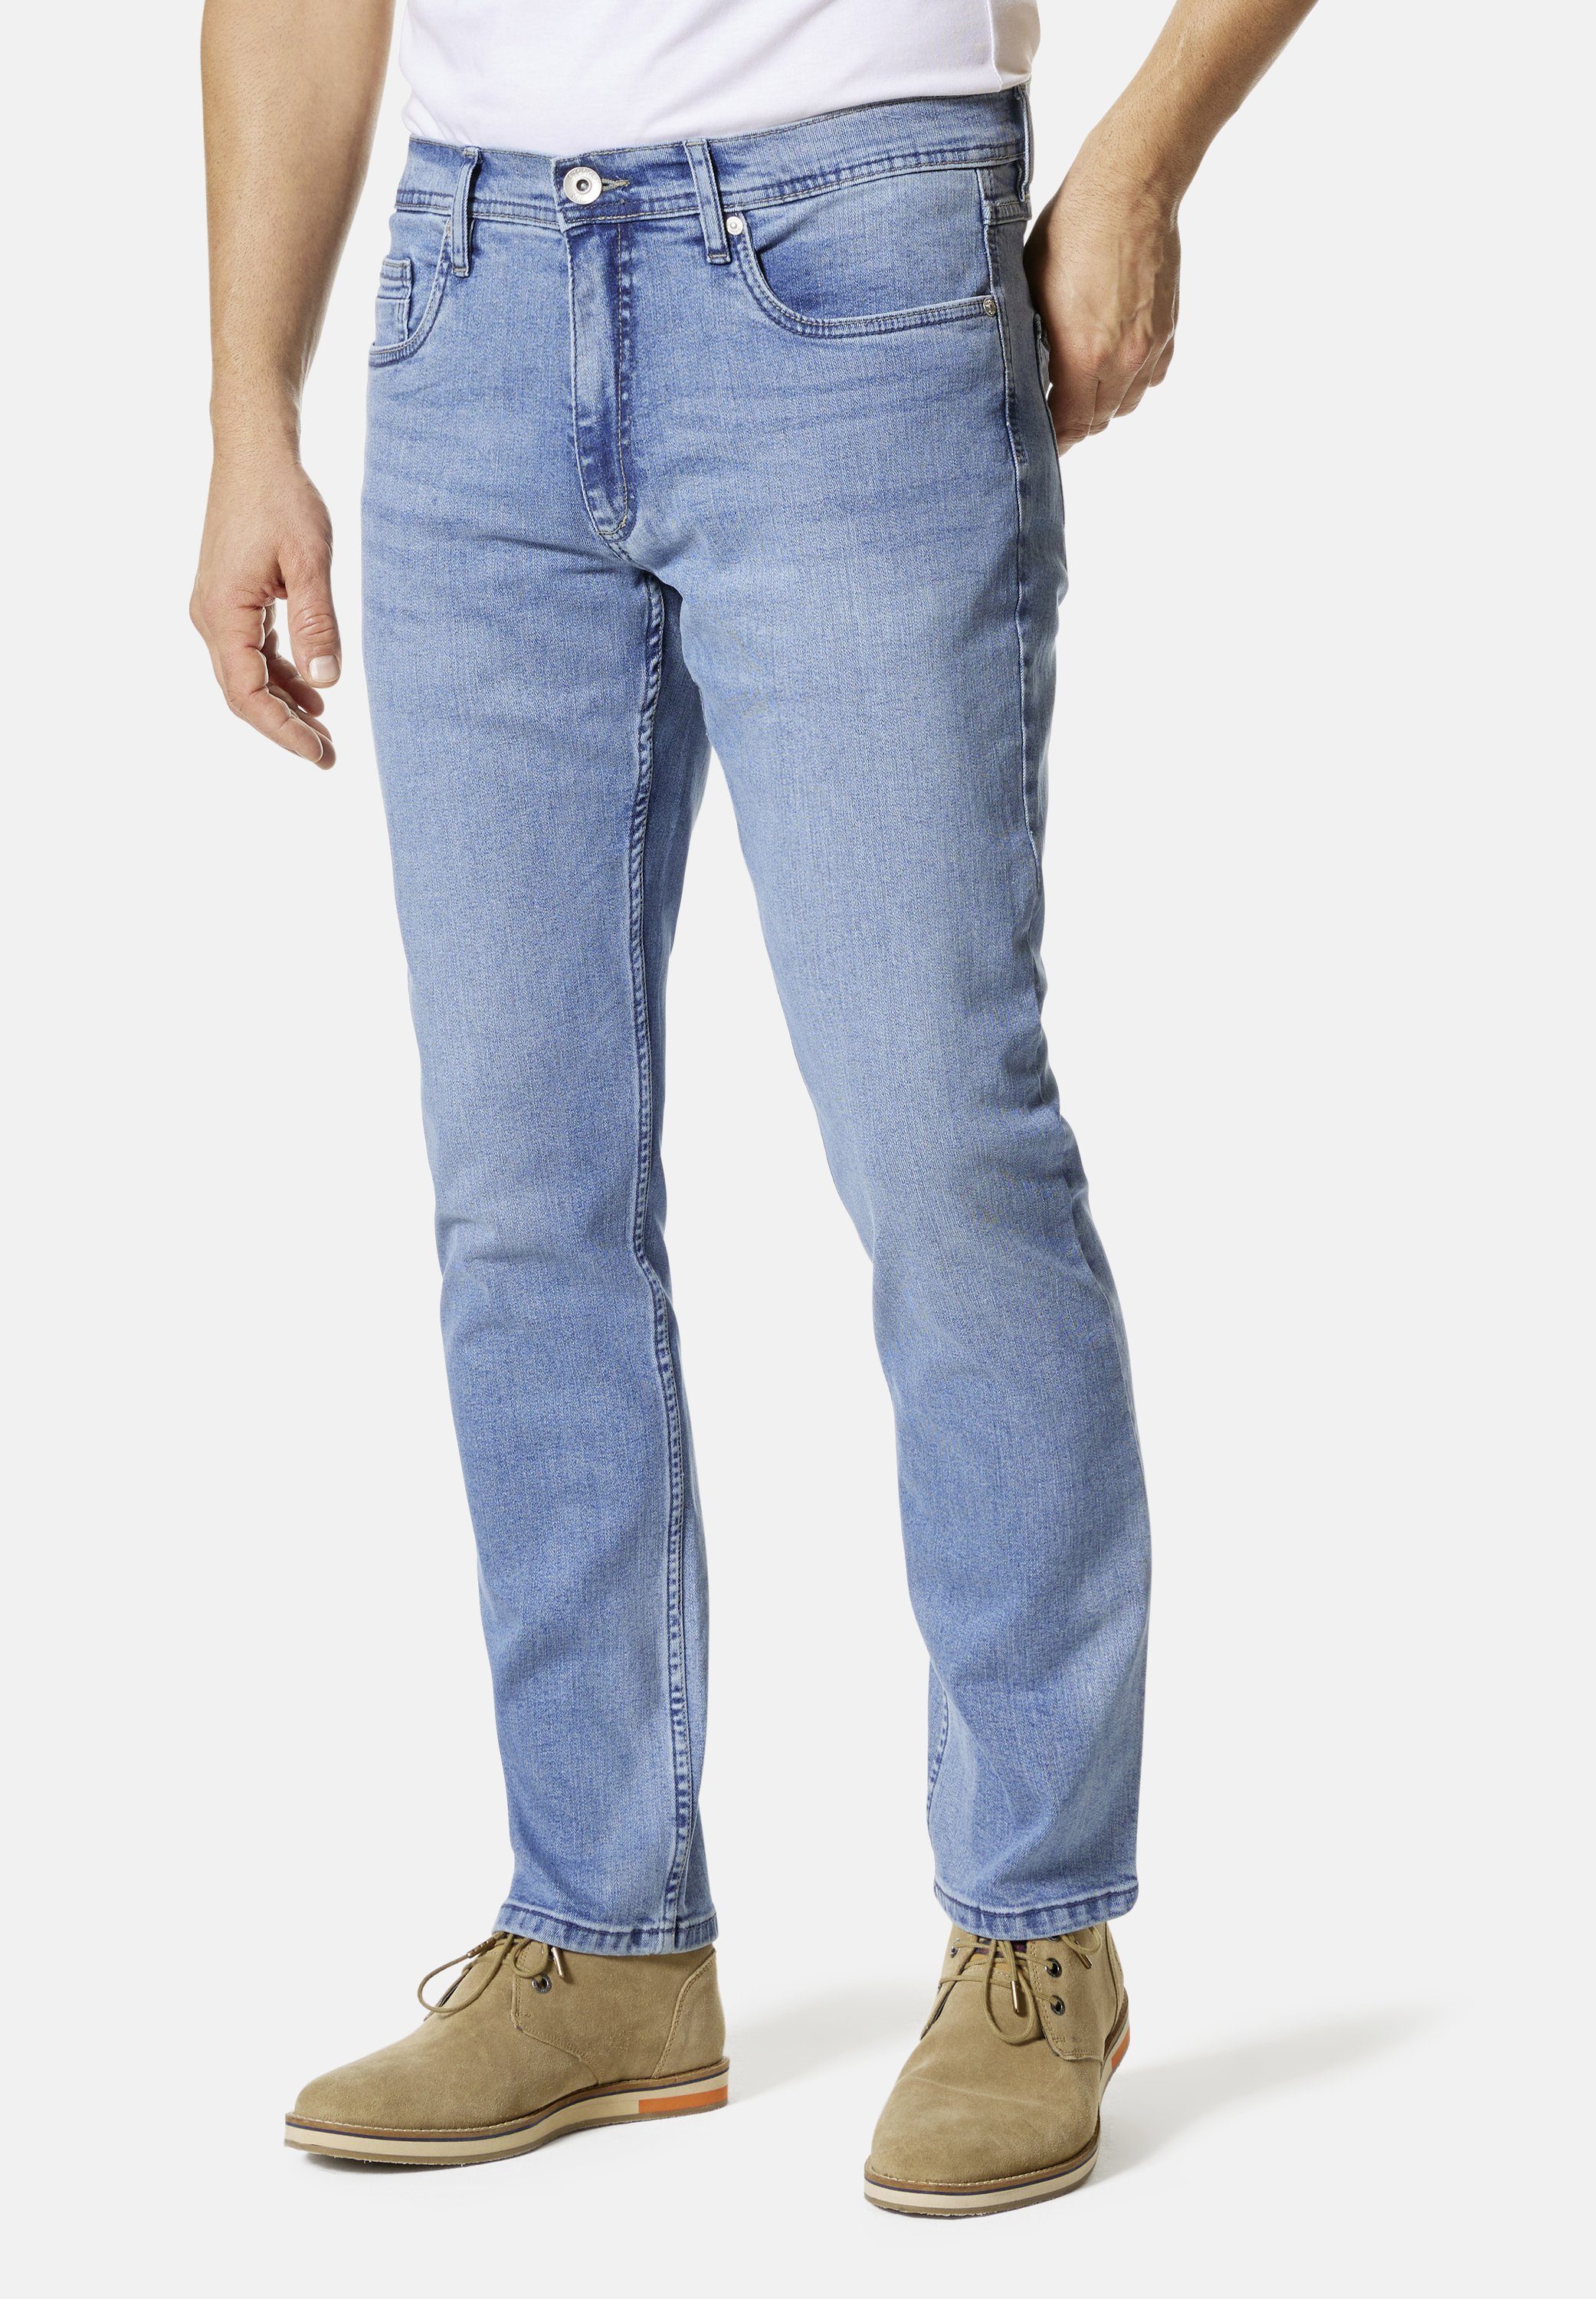 Stooker Men 5-Pocket-Jeans Glendale Denim Slim Straight Fit skyblue used